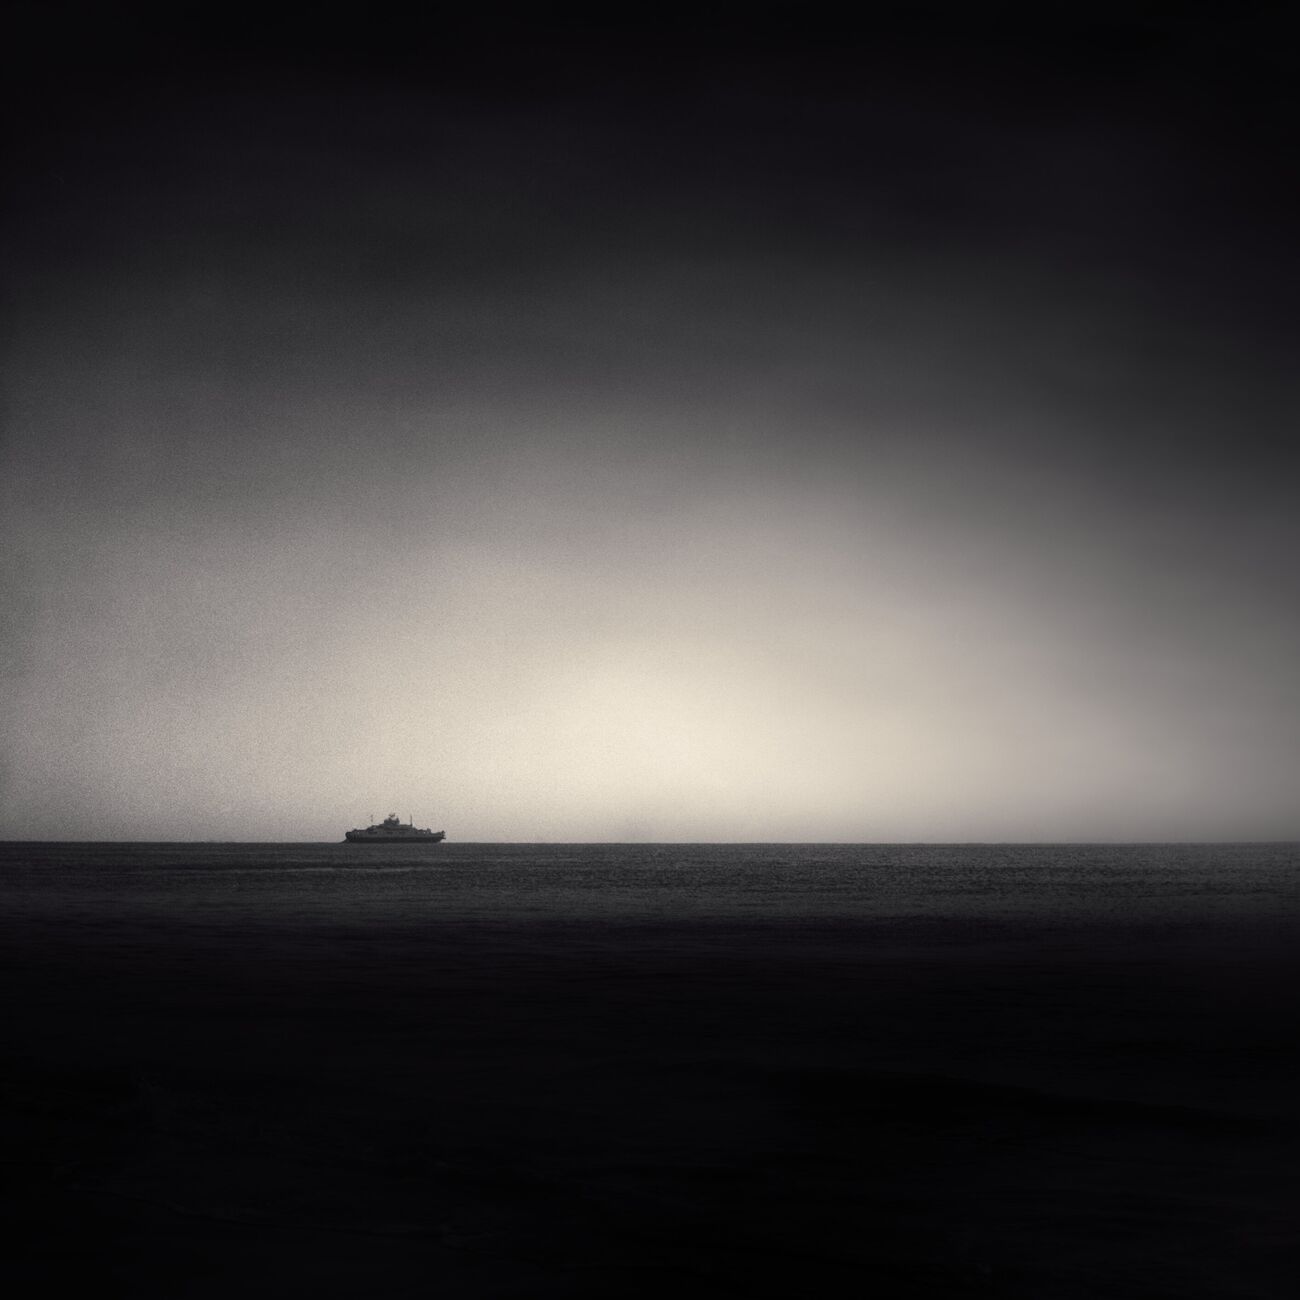 Achat d'une photographie 23 x 23 cm, Ferry Boat. Ref-1209-3 - Denis Olivier Photographie d'Art